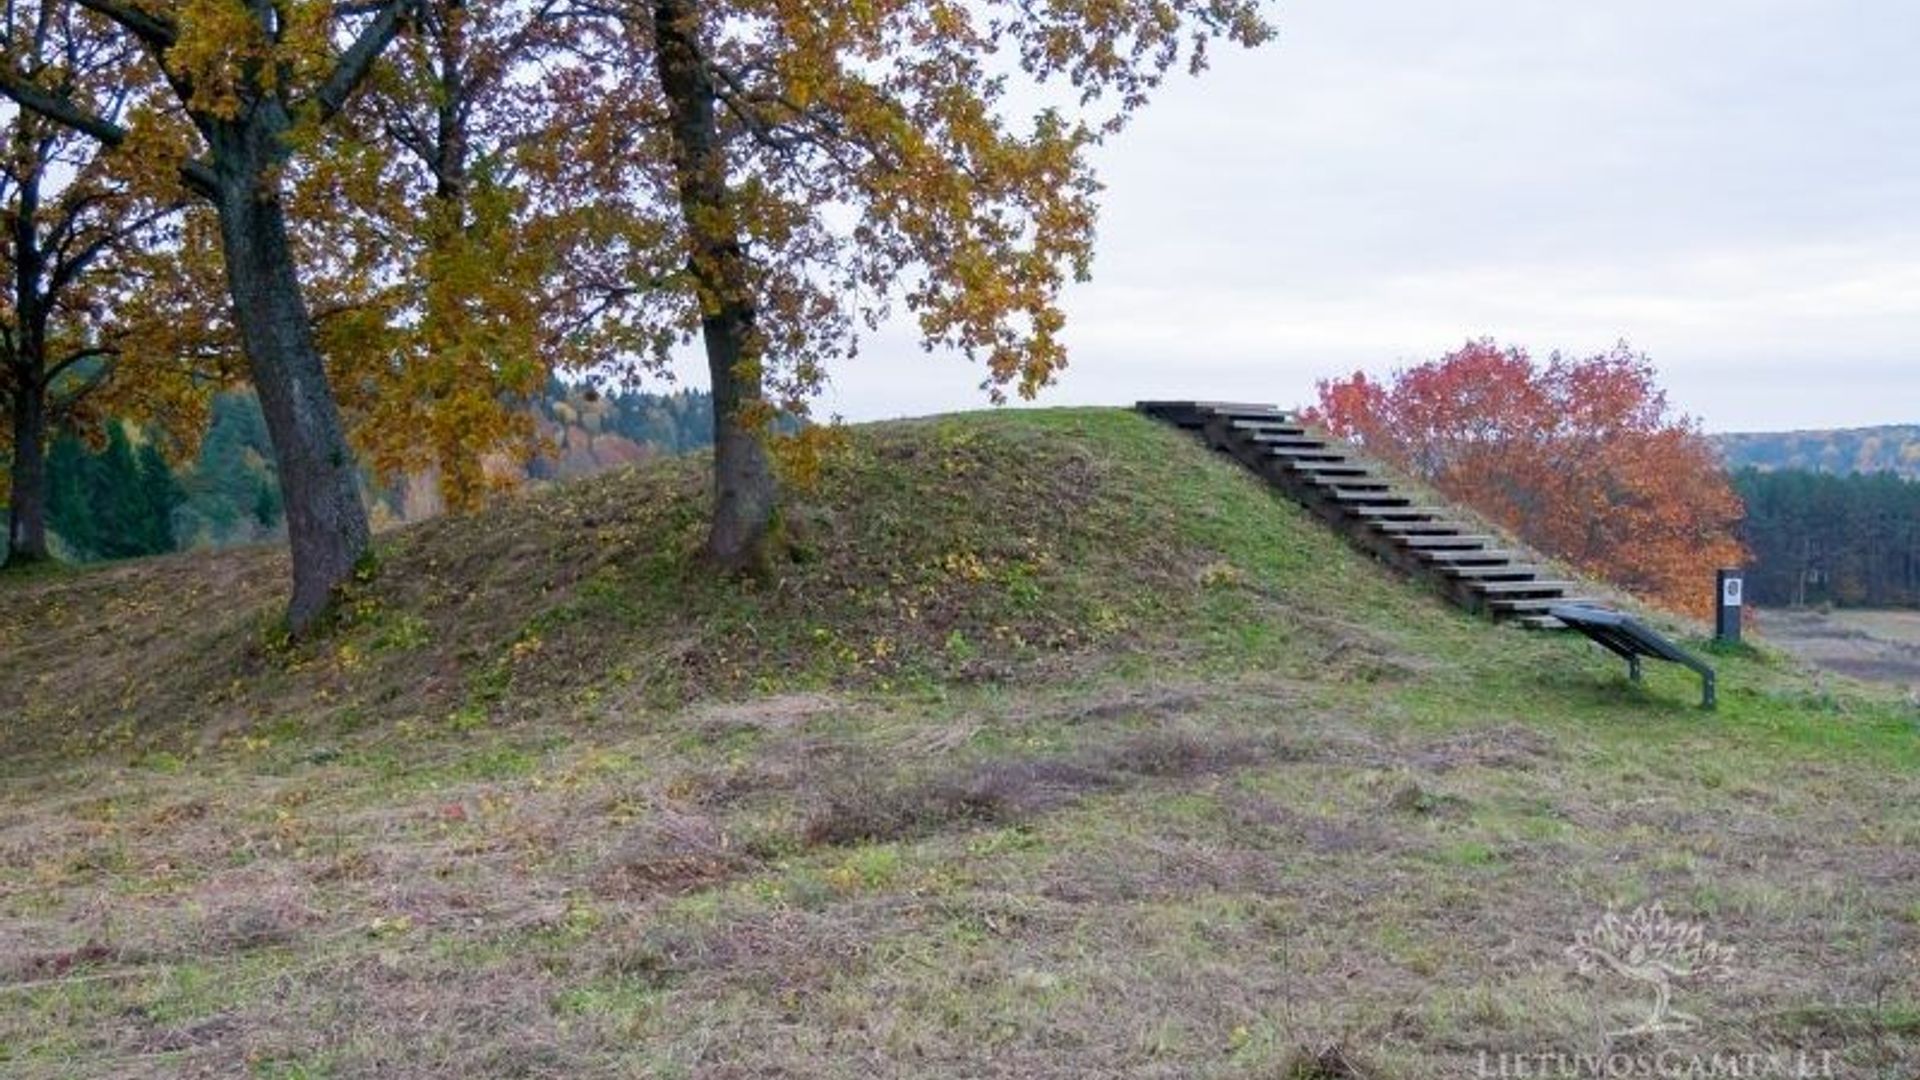 Kriveikiškis Mound